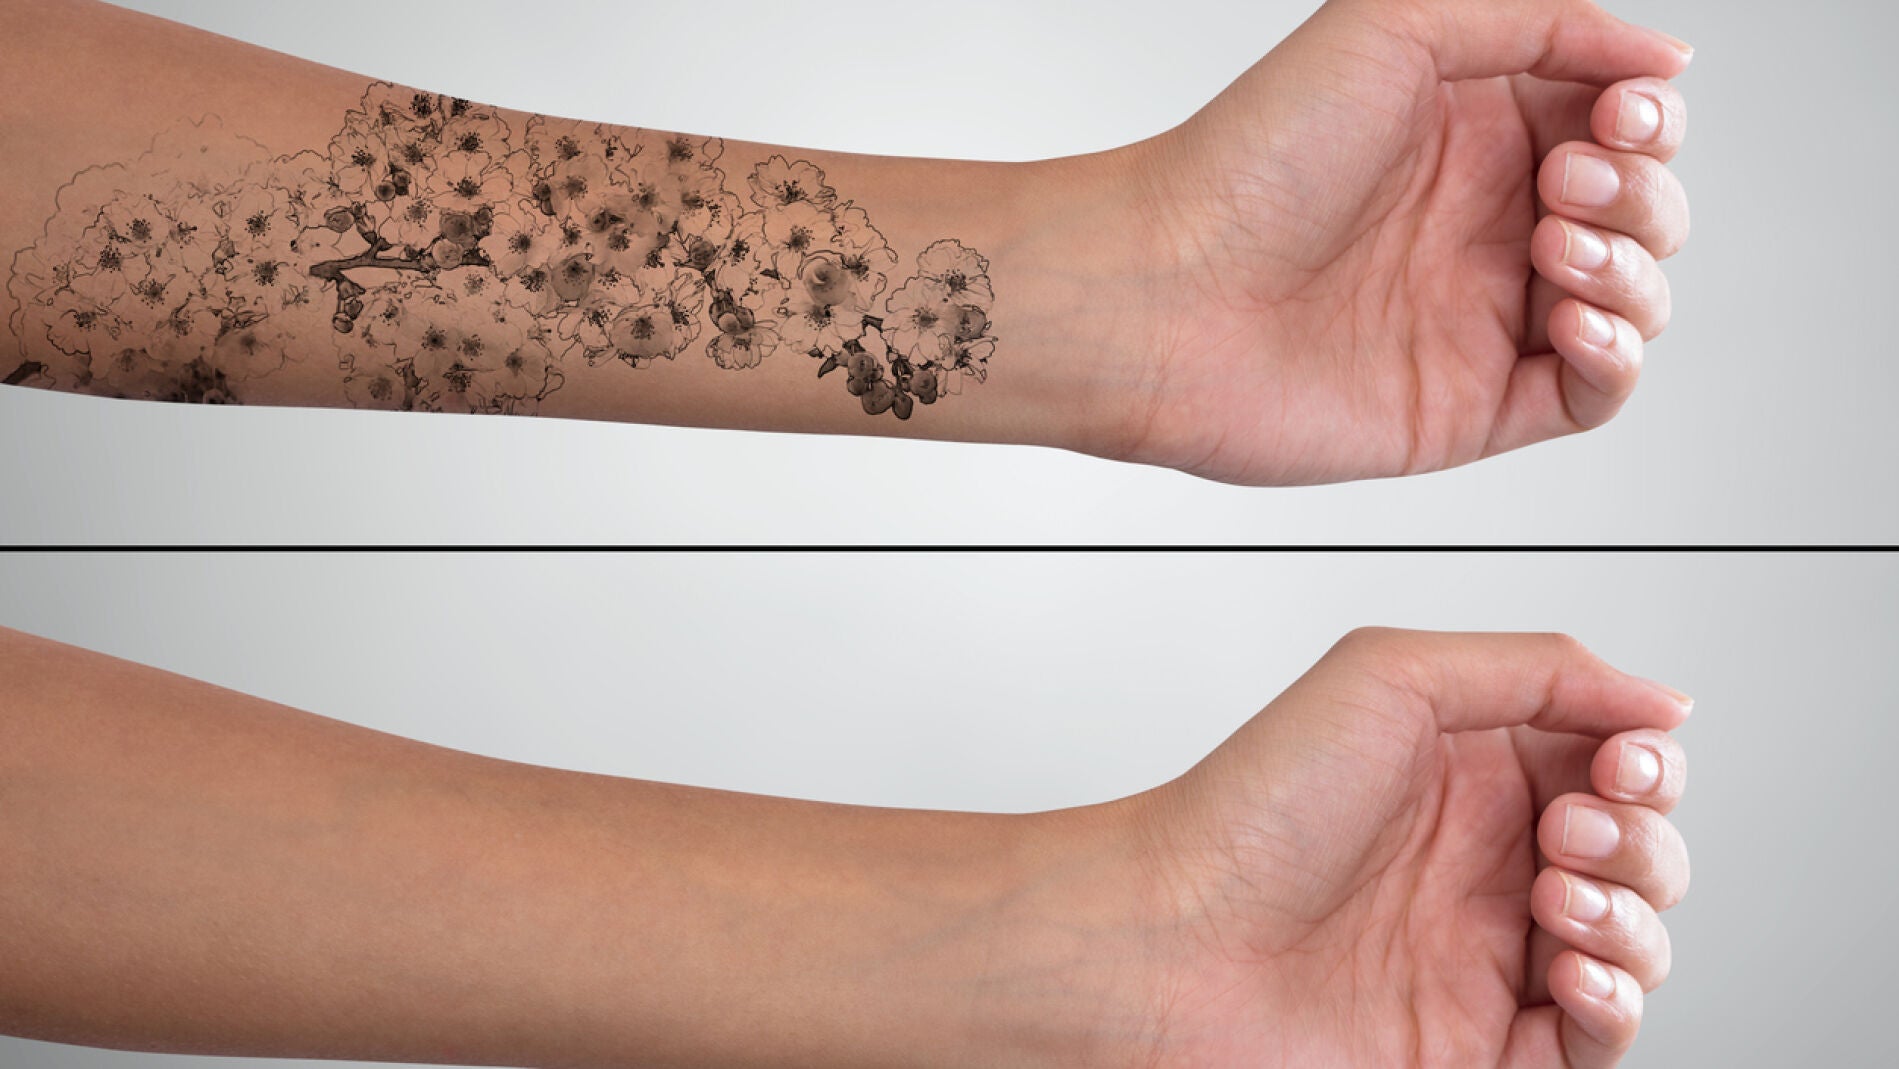 Estás pensando en hacerte un tatuaje? Esto es todo lo que deberías saber - VÍDEO